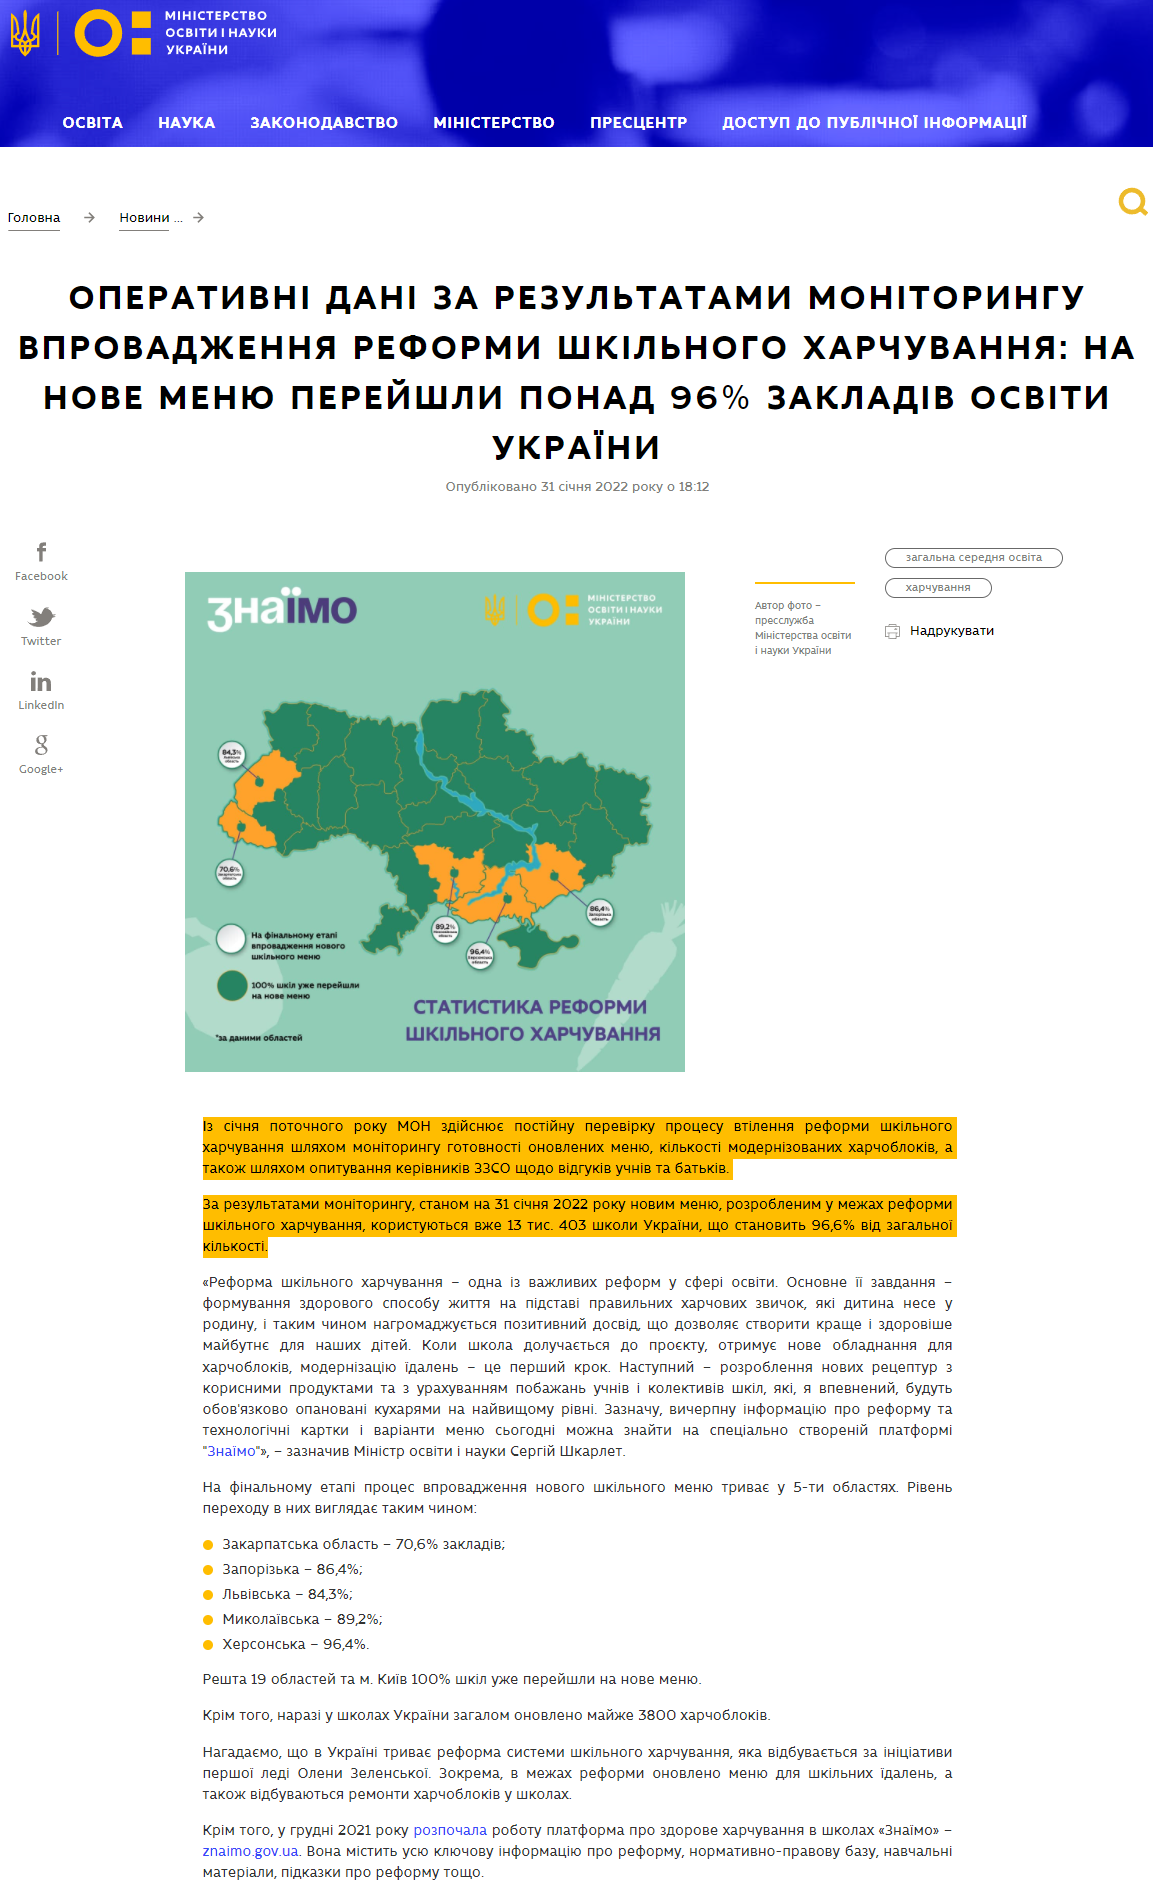 https://mon.gov.ua/ua/news/operativni-dani-za-rezultatami-monitoringu-vprovadzhennya-reformi-shkilnogo-harchuvannya-na-nove-menyu-perejshli-ponad-96-zakladiv-osviti-ukrayini